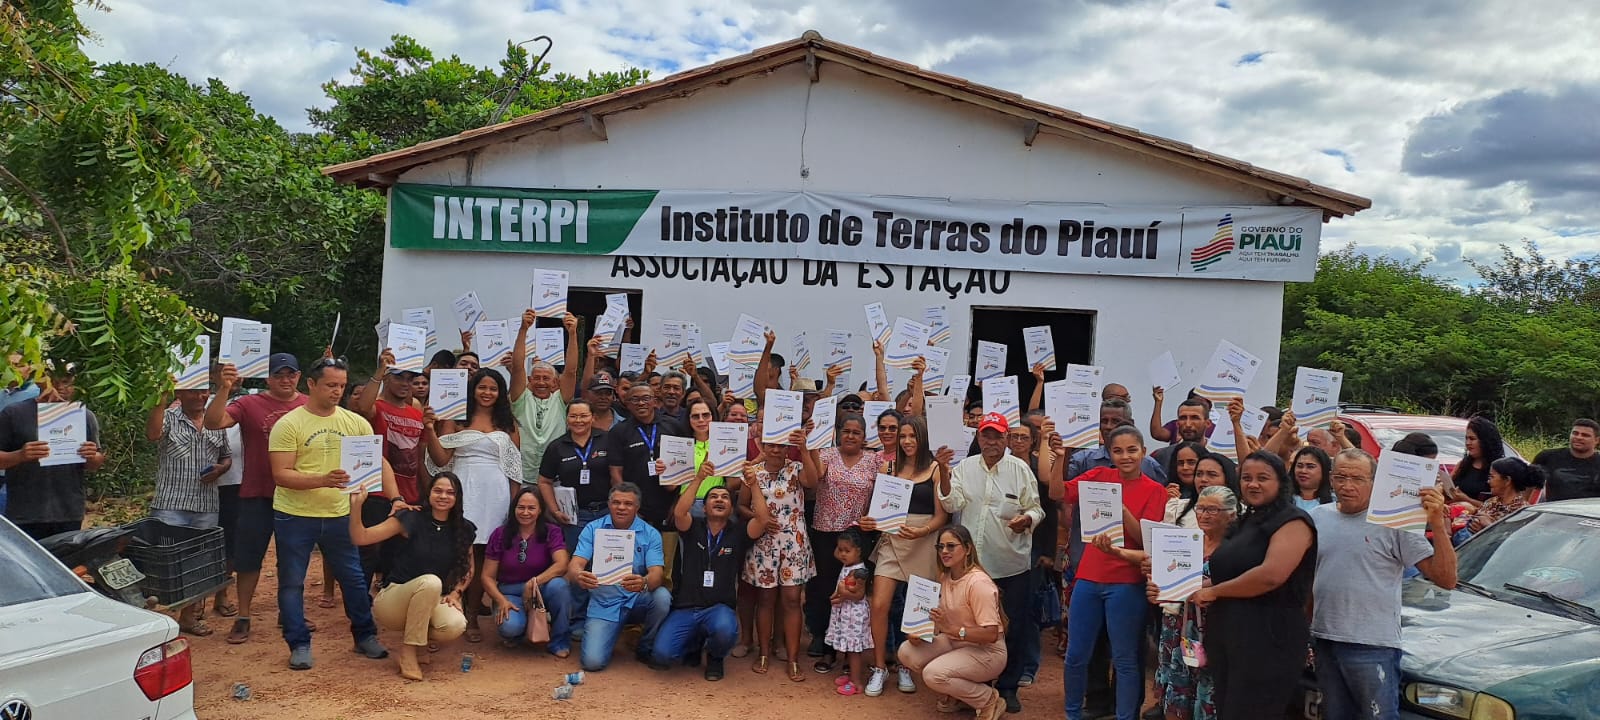 160 famílias de São Raimundo Nonato recebem títulos de terras